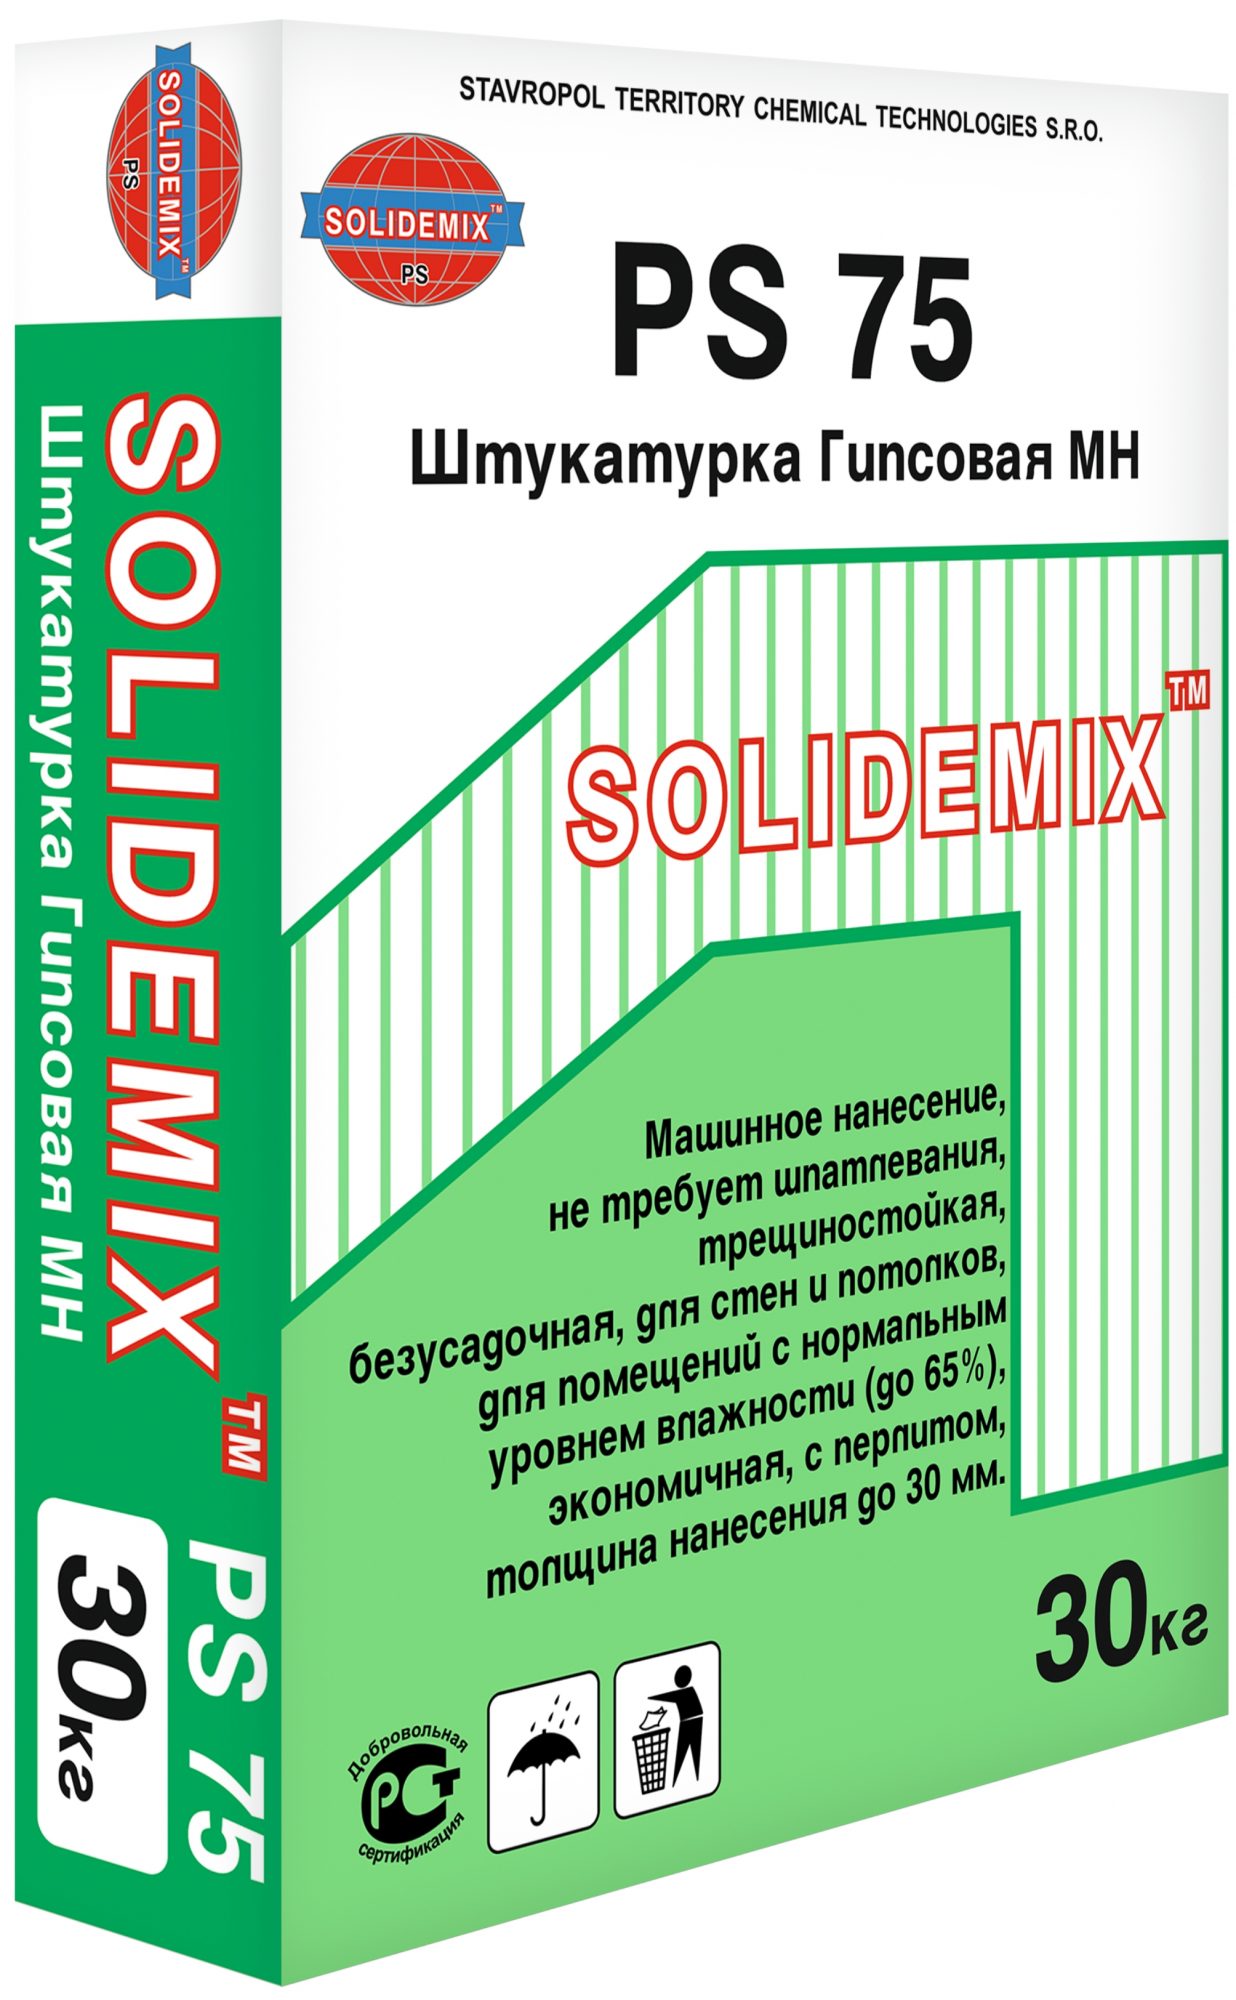 Купить Штукатурка Гипсовая МН «SOLIDEMIX PS 75» от SOLIDEMIX